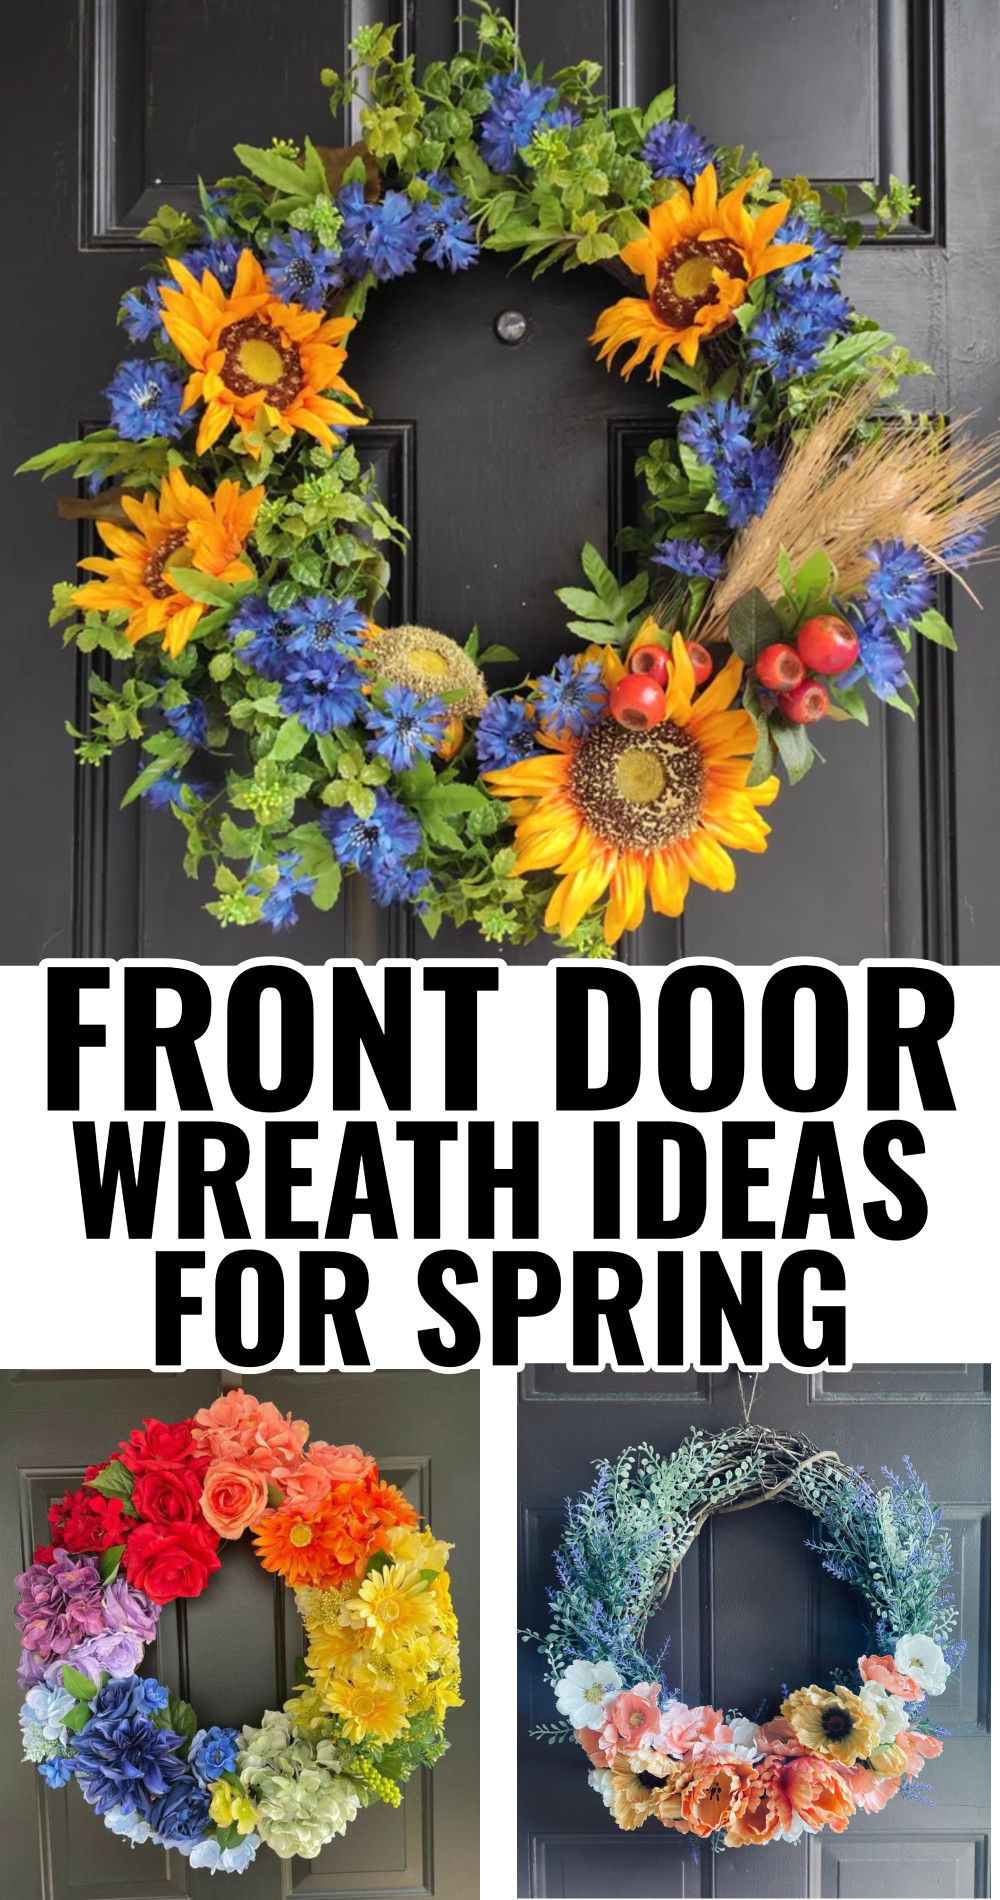 Front Door Wreath Ideas For Spring